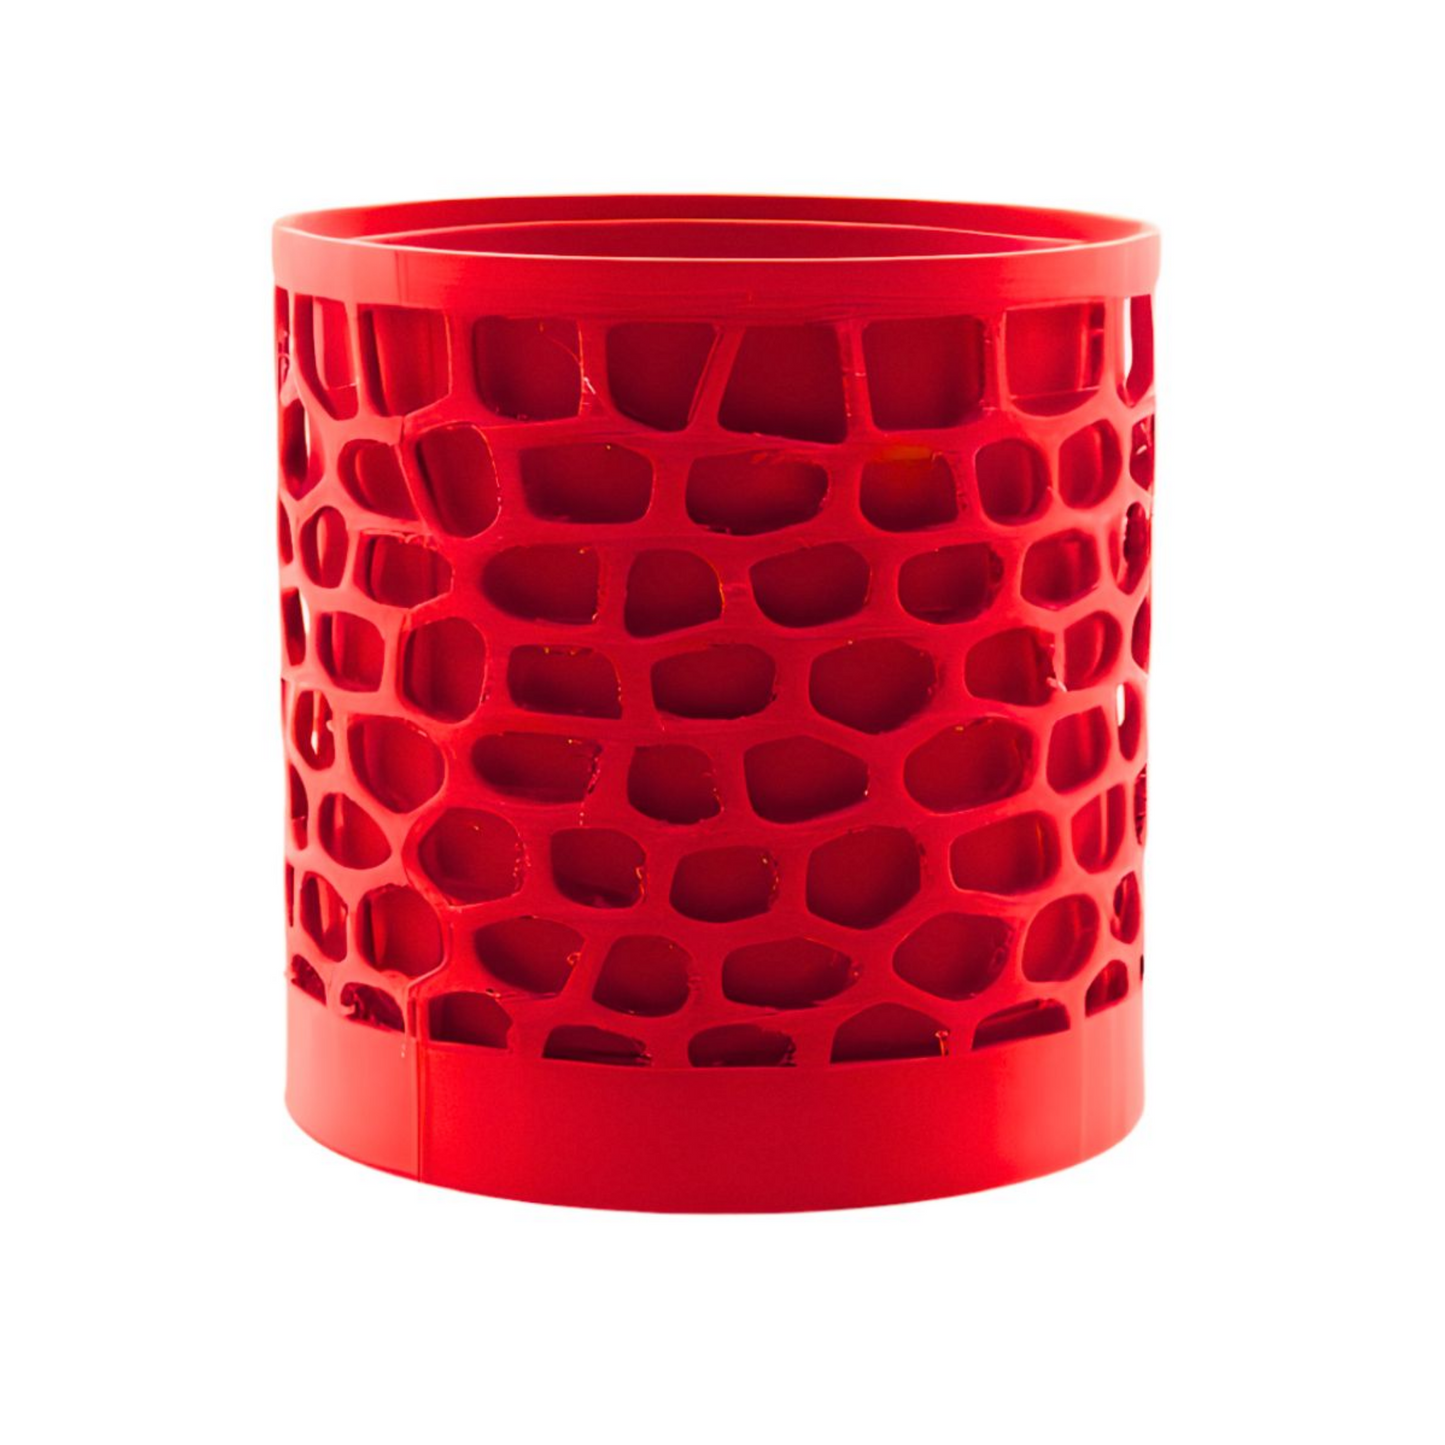 Bergamo design vase red edition